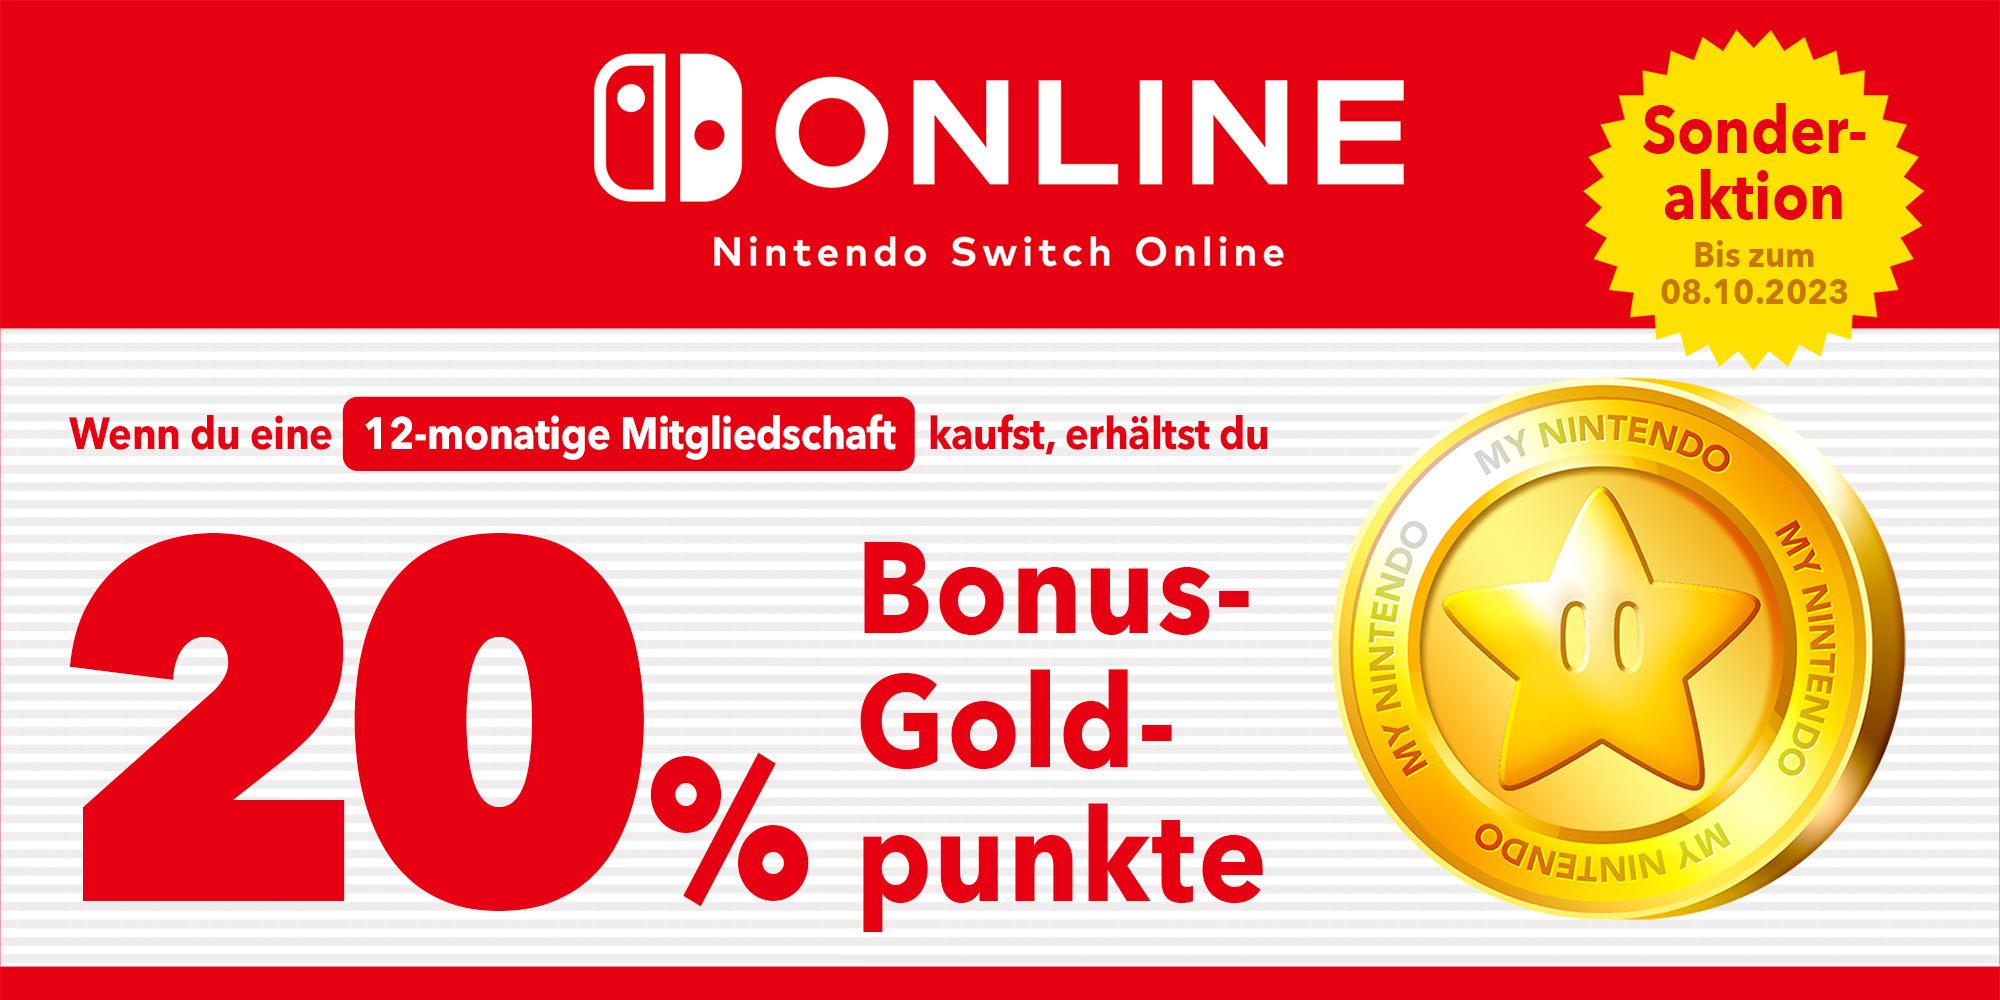 Sonderaktion: Du kannst bis zu CHF 18 in Goldpunkten mit einer 12-monatigen Mitgliedschaft bei Nintendo Switch Online erhalten!